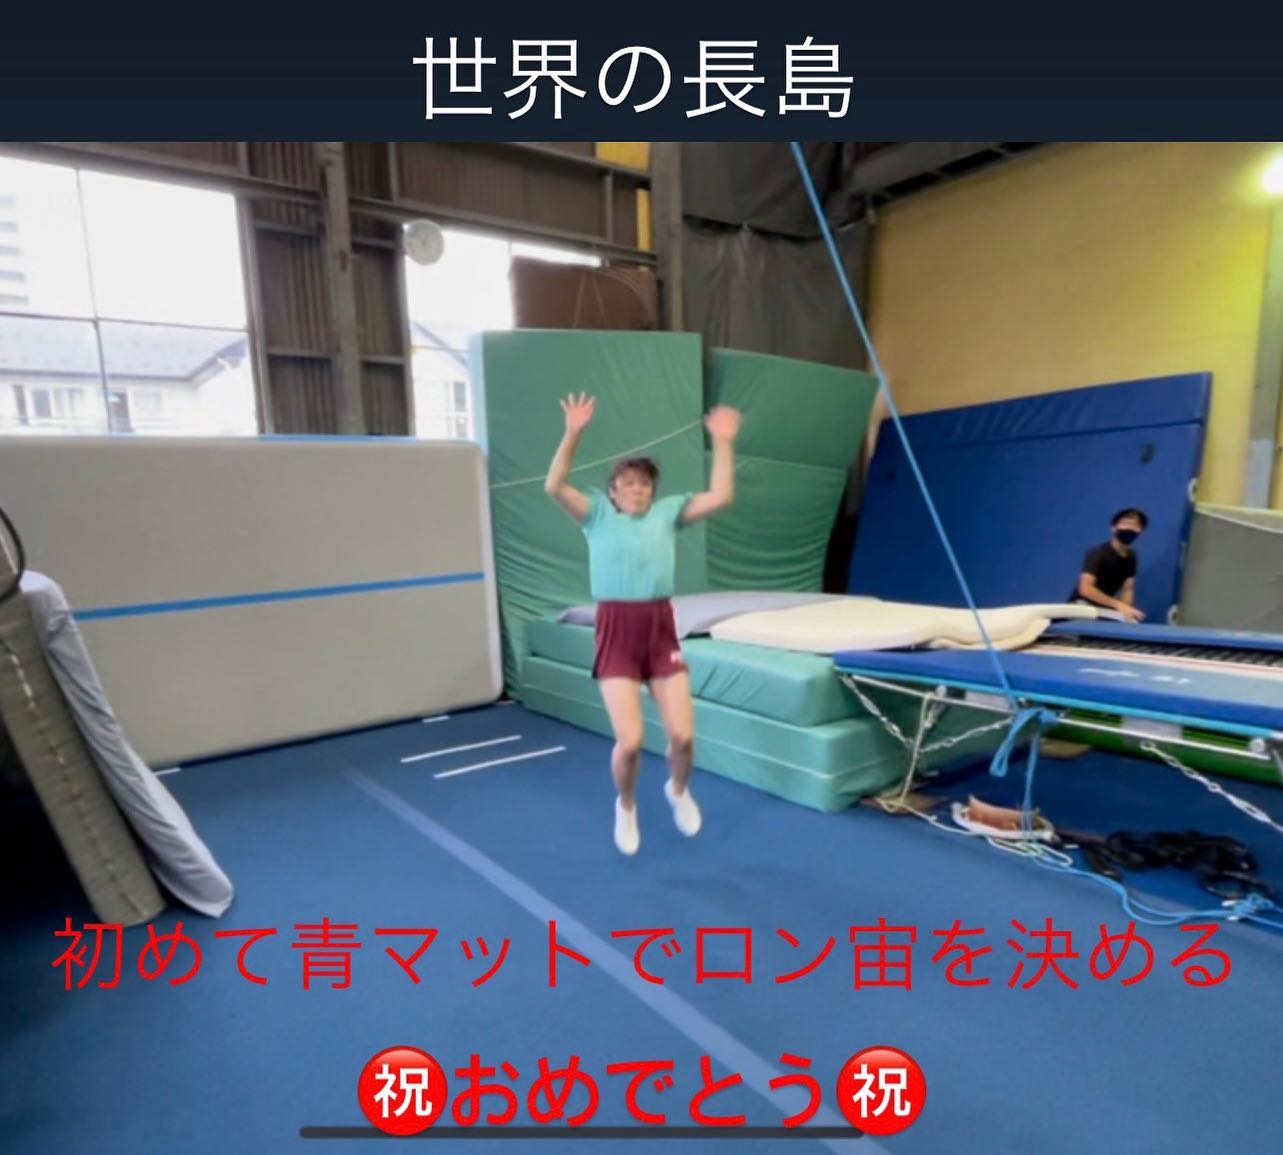 チアタンブリング青マットでロン宙初めてできました！おめでとう️詳しくはInstagramで@nozawa.trampoline